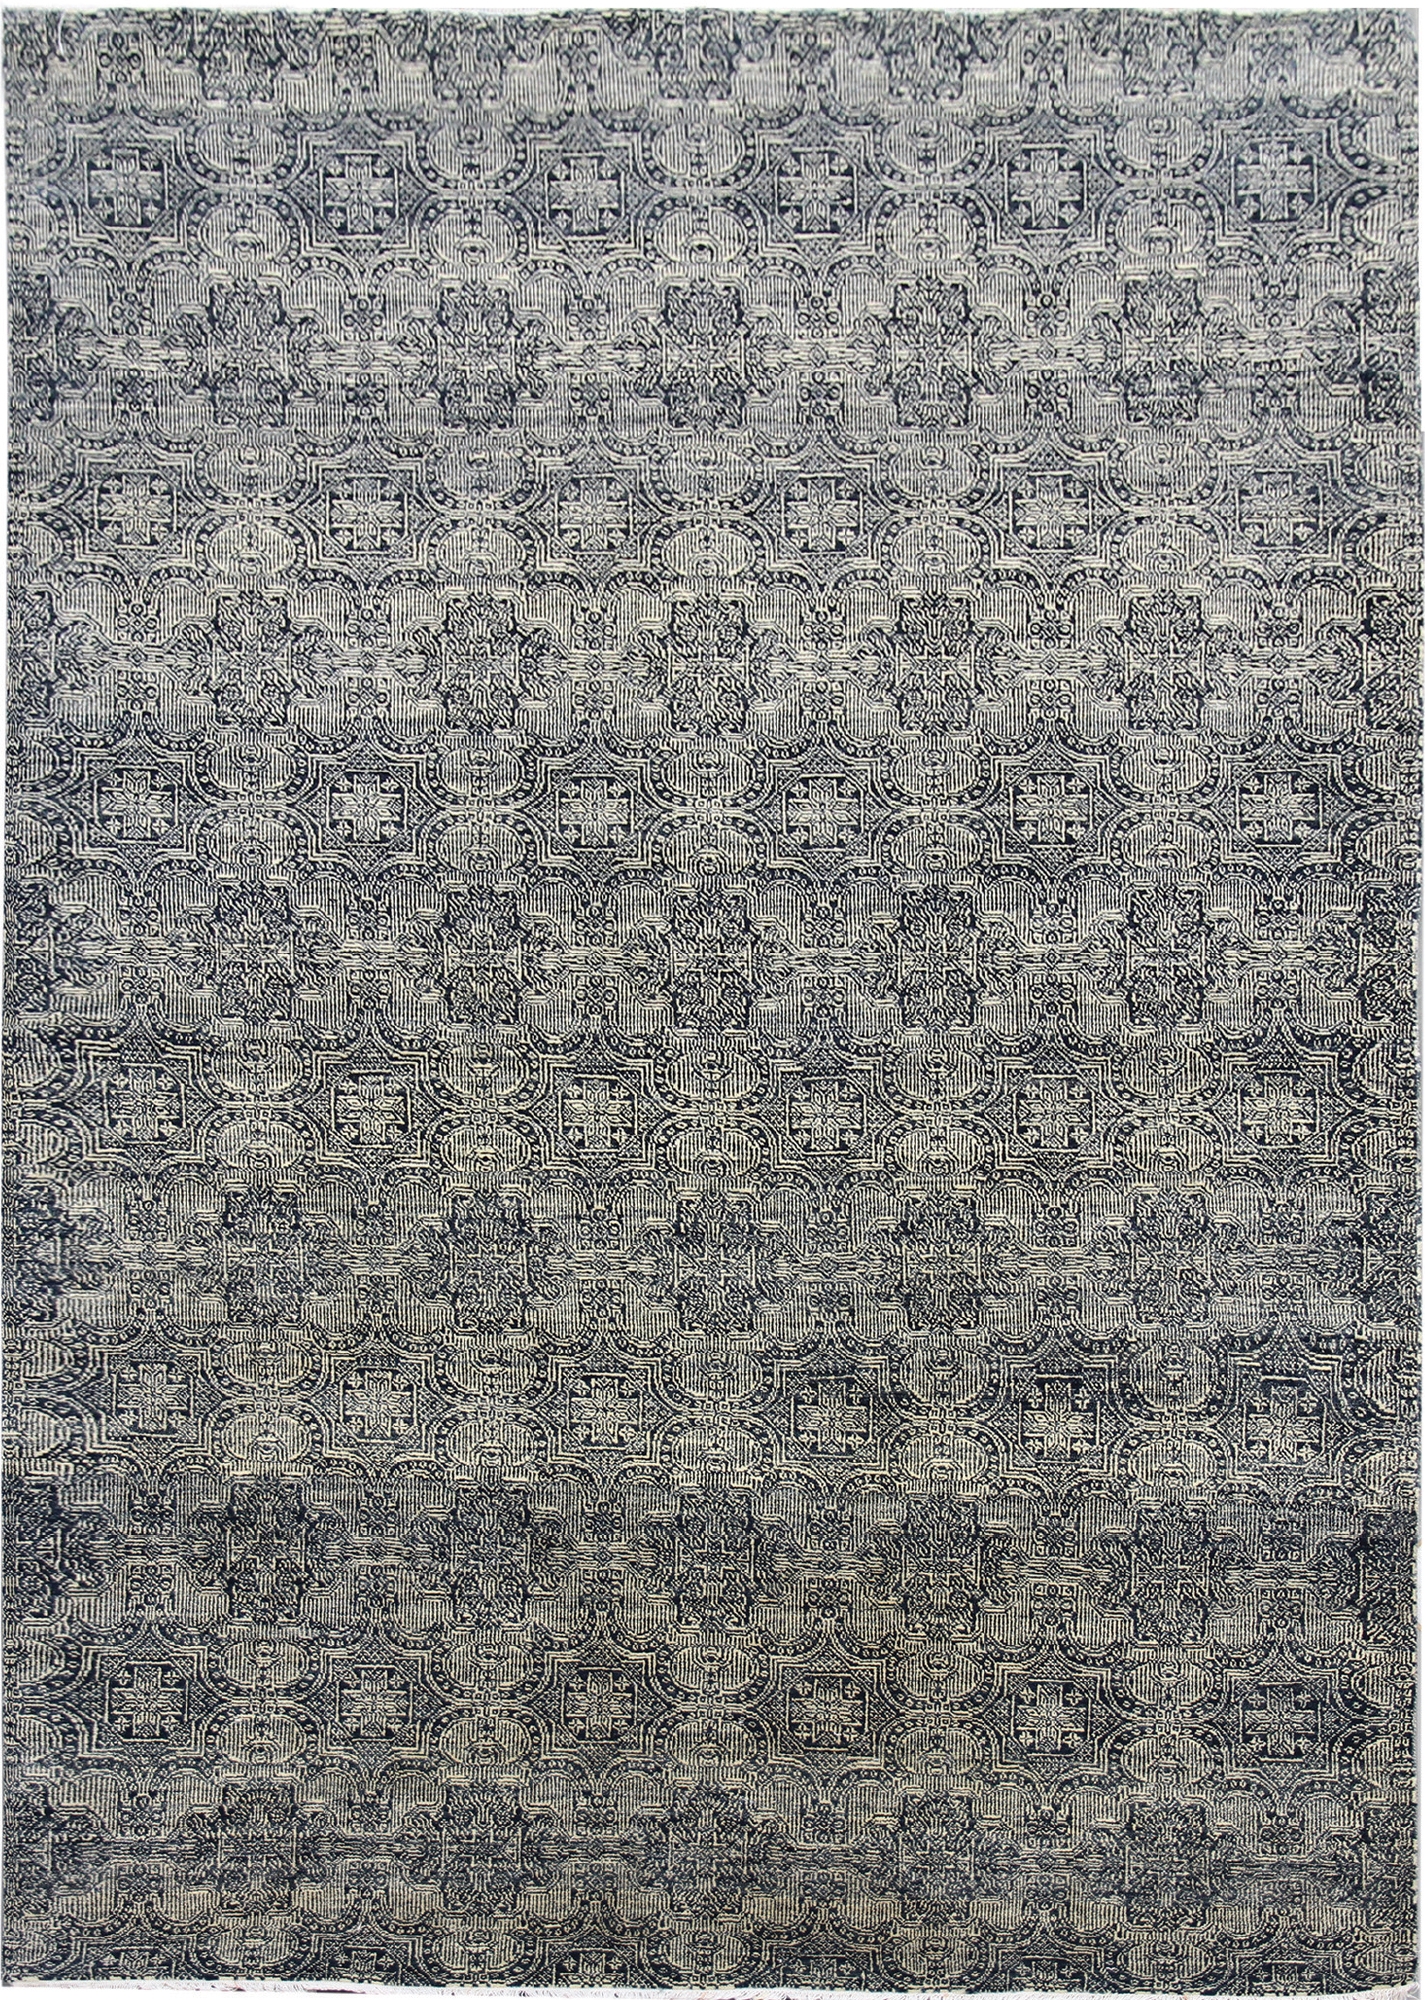 Ručne viazaný kusový koberec Diamond DC-JK 1 SILVER / BLACK - 140x200 cm Diamond Carpets koberce 